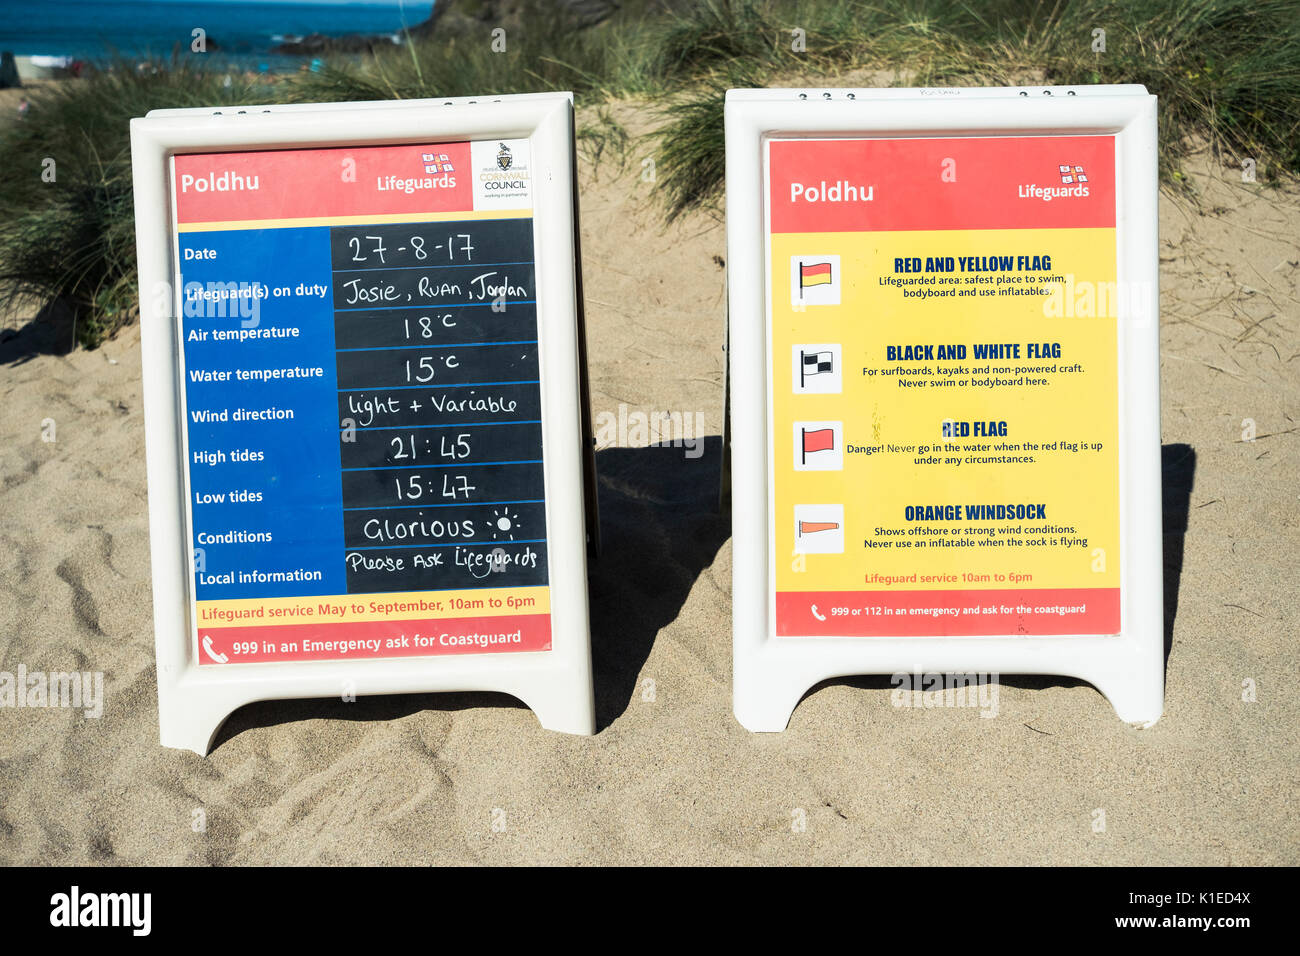 Poldhu Cove, Cornwall, Regno Unito. 27 Agosto, 2017. Scheda RNLI suggerendo di 18 gradi e gloriosa presso la spiaggia di Poldhu, Cornwall Credito: Mick Buston/Alamy Live News Foto Stock